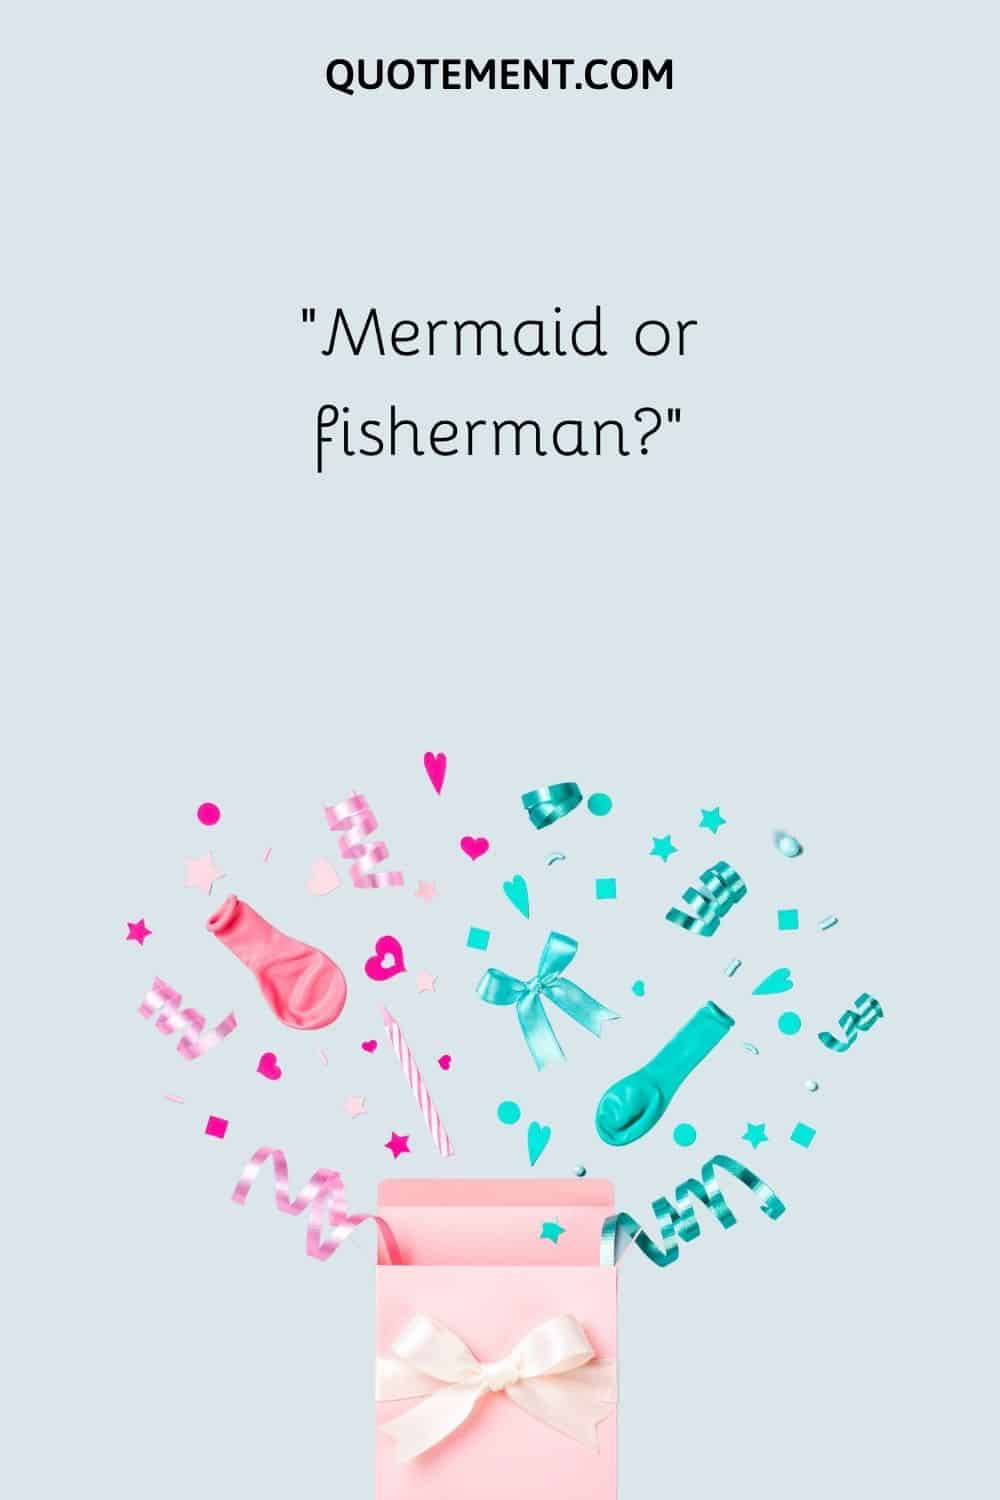 Mermaid or Fisherman